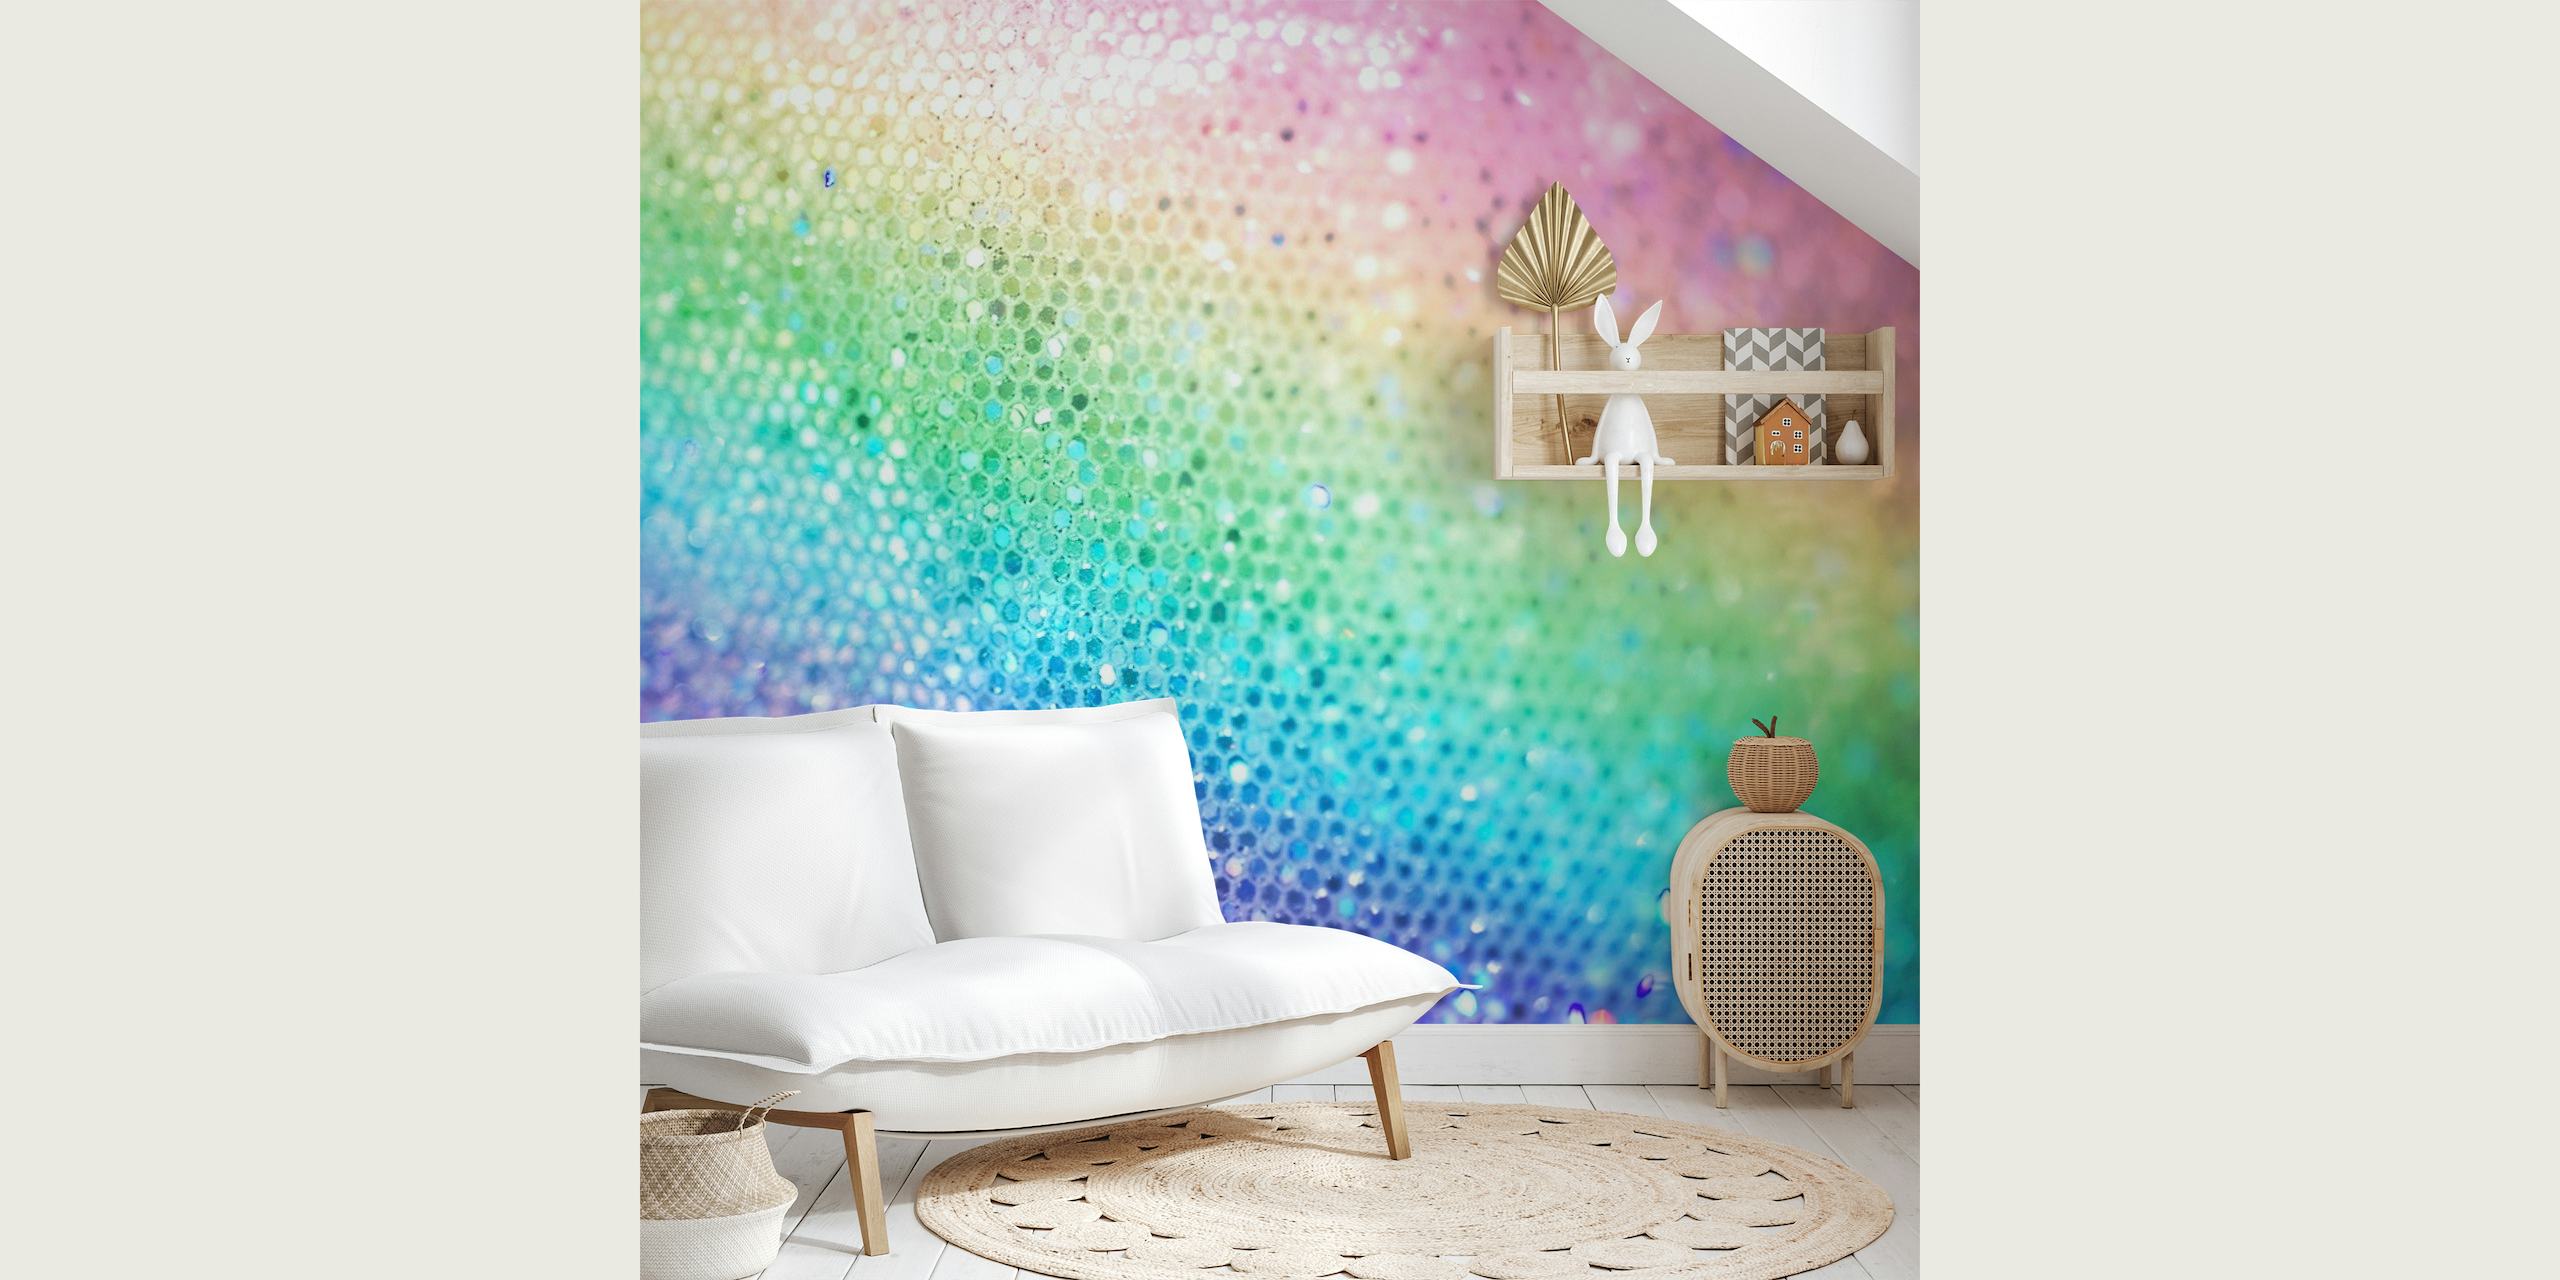 Šarena Rainbow Princess Glitter zidna slika s efektom svjetlucave teksture